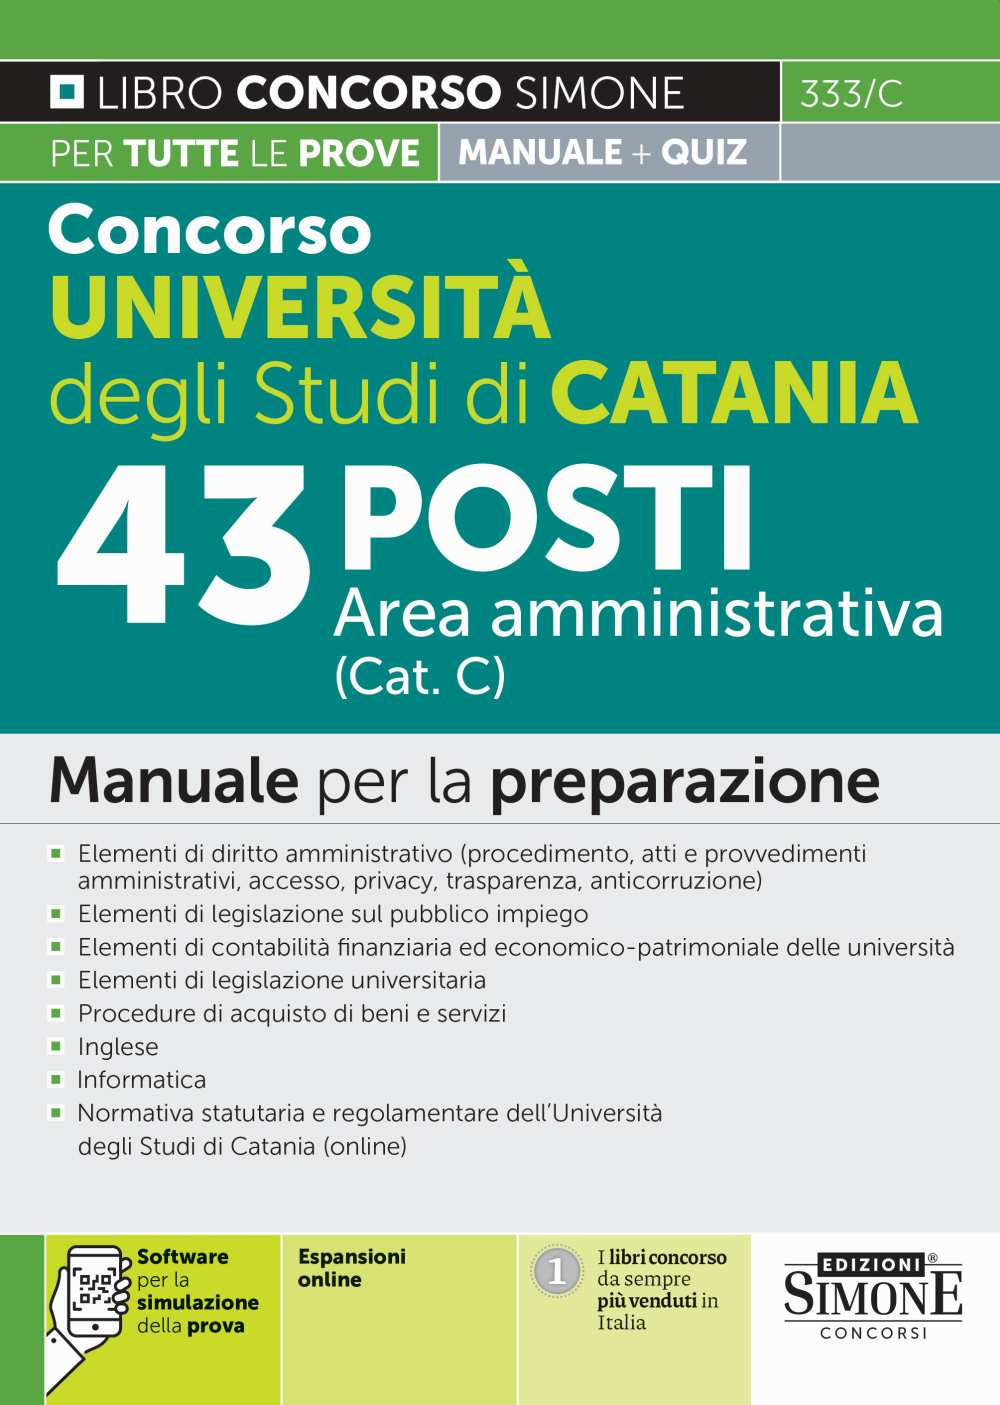 Concorso Università degli Studi di Catania 43 posti Area amministrativa (Cat. C) - Manuale - 333/C